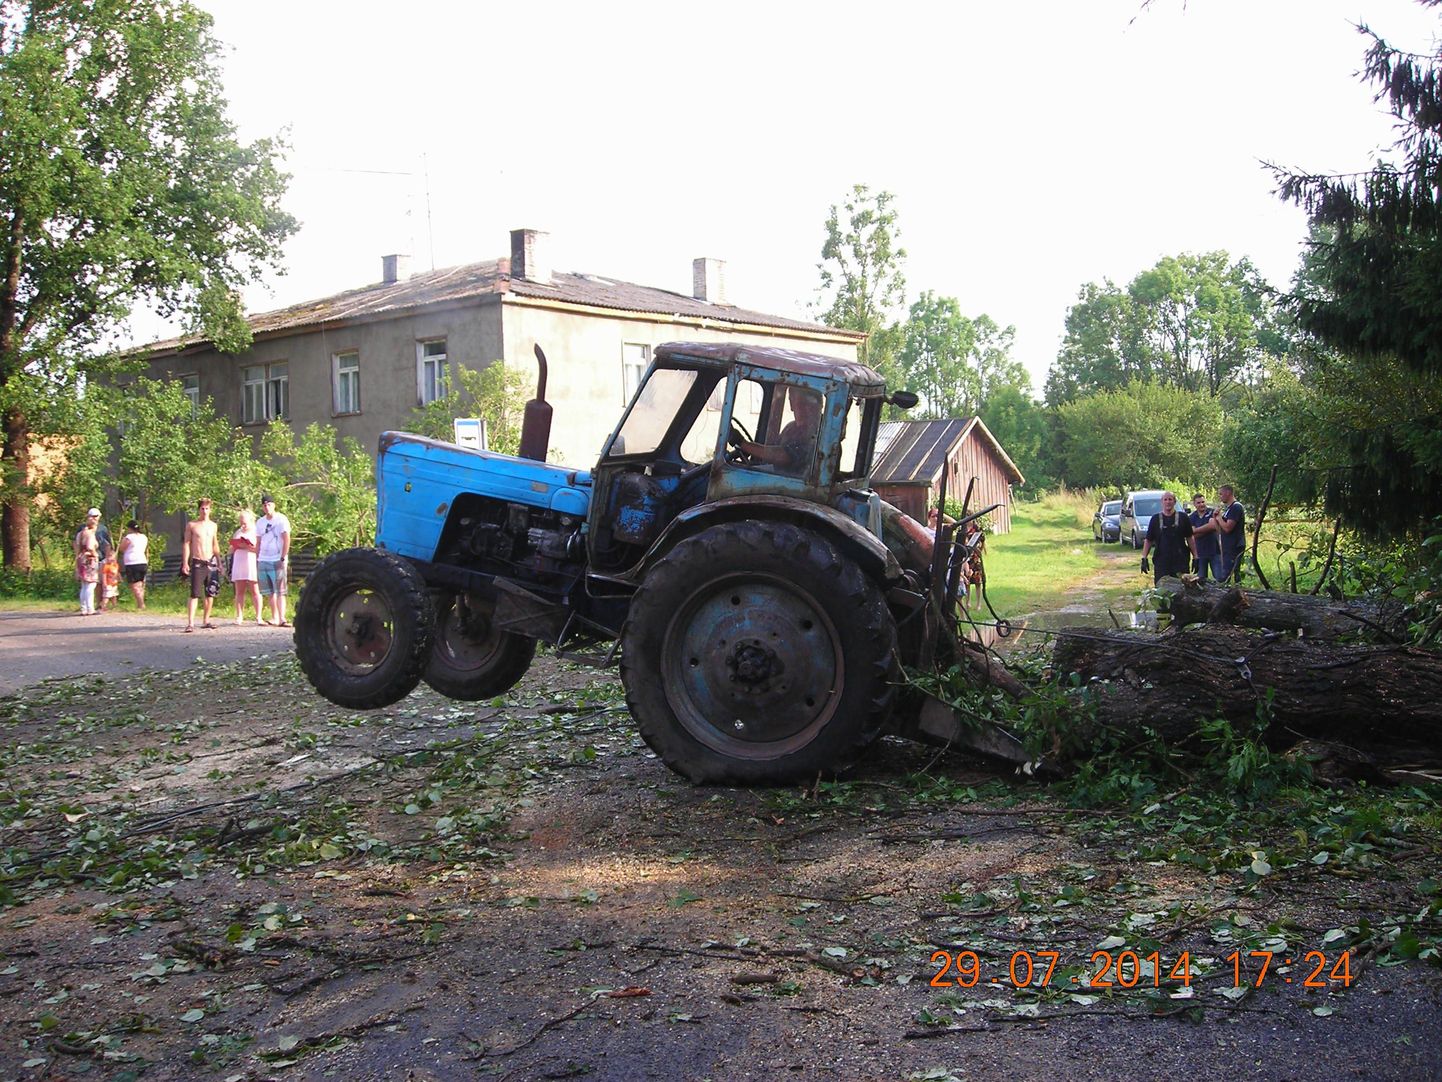 Tõnissaare külas osutasid päästjatele langenud puude eemaldamisel, tõhusat abi saagide ja traktoritega kohale tulnud elanikud.